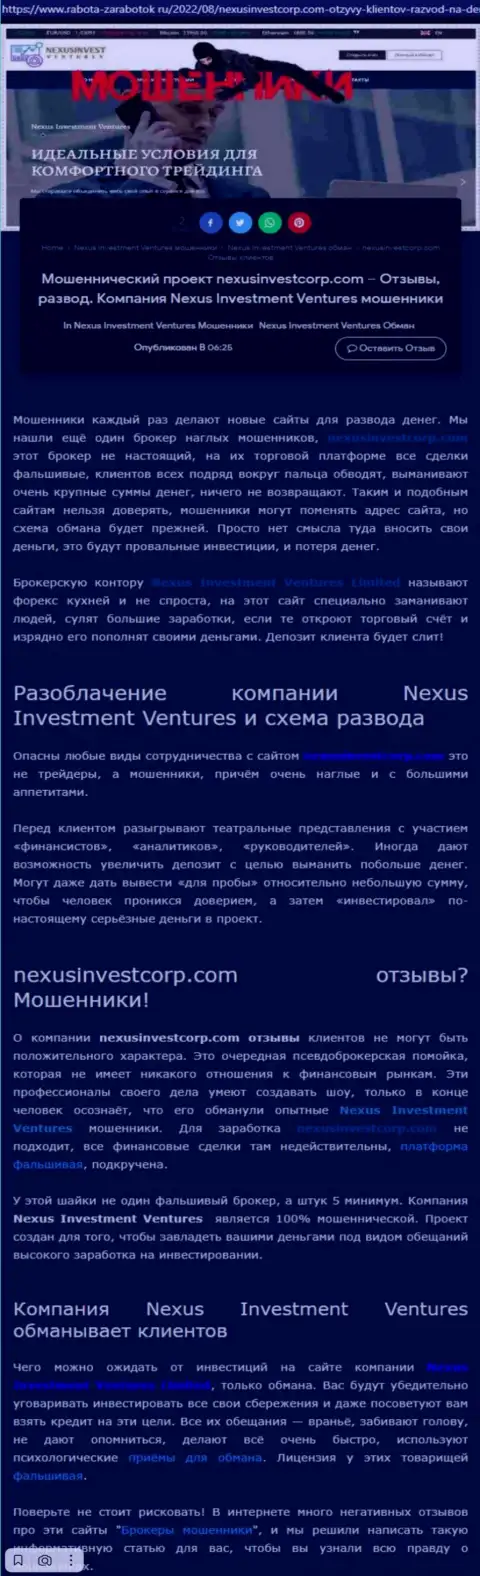 Если же не желаете оказаться очередной жертвой Nexus Investment Ventures, бегите от них как можно дальше (обзор мошеннических деяний)